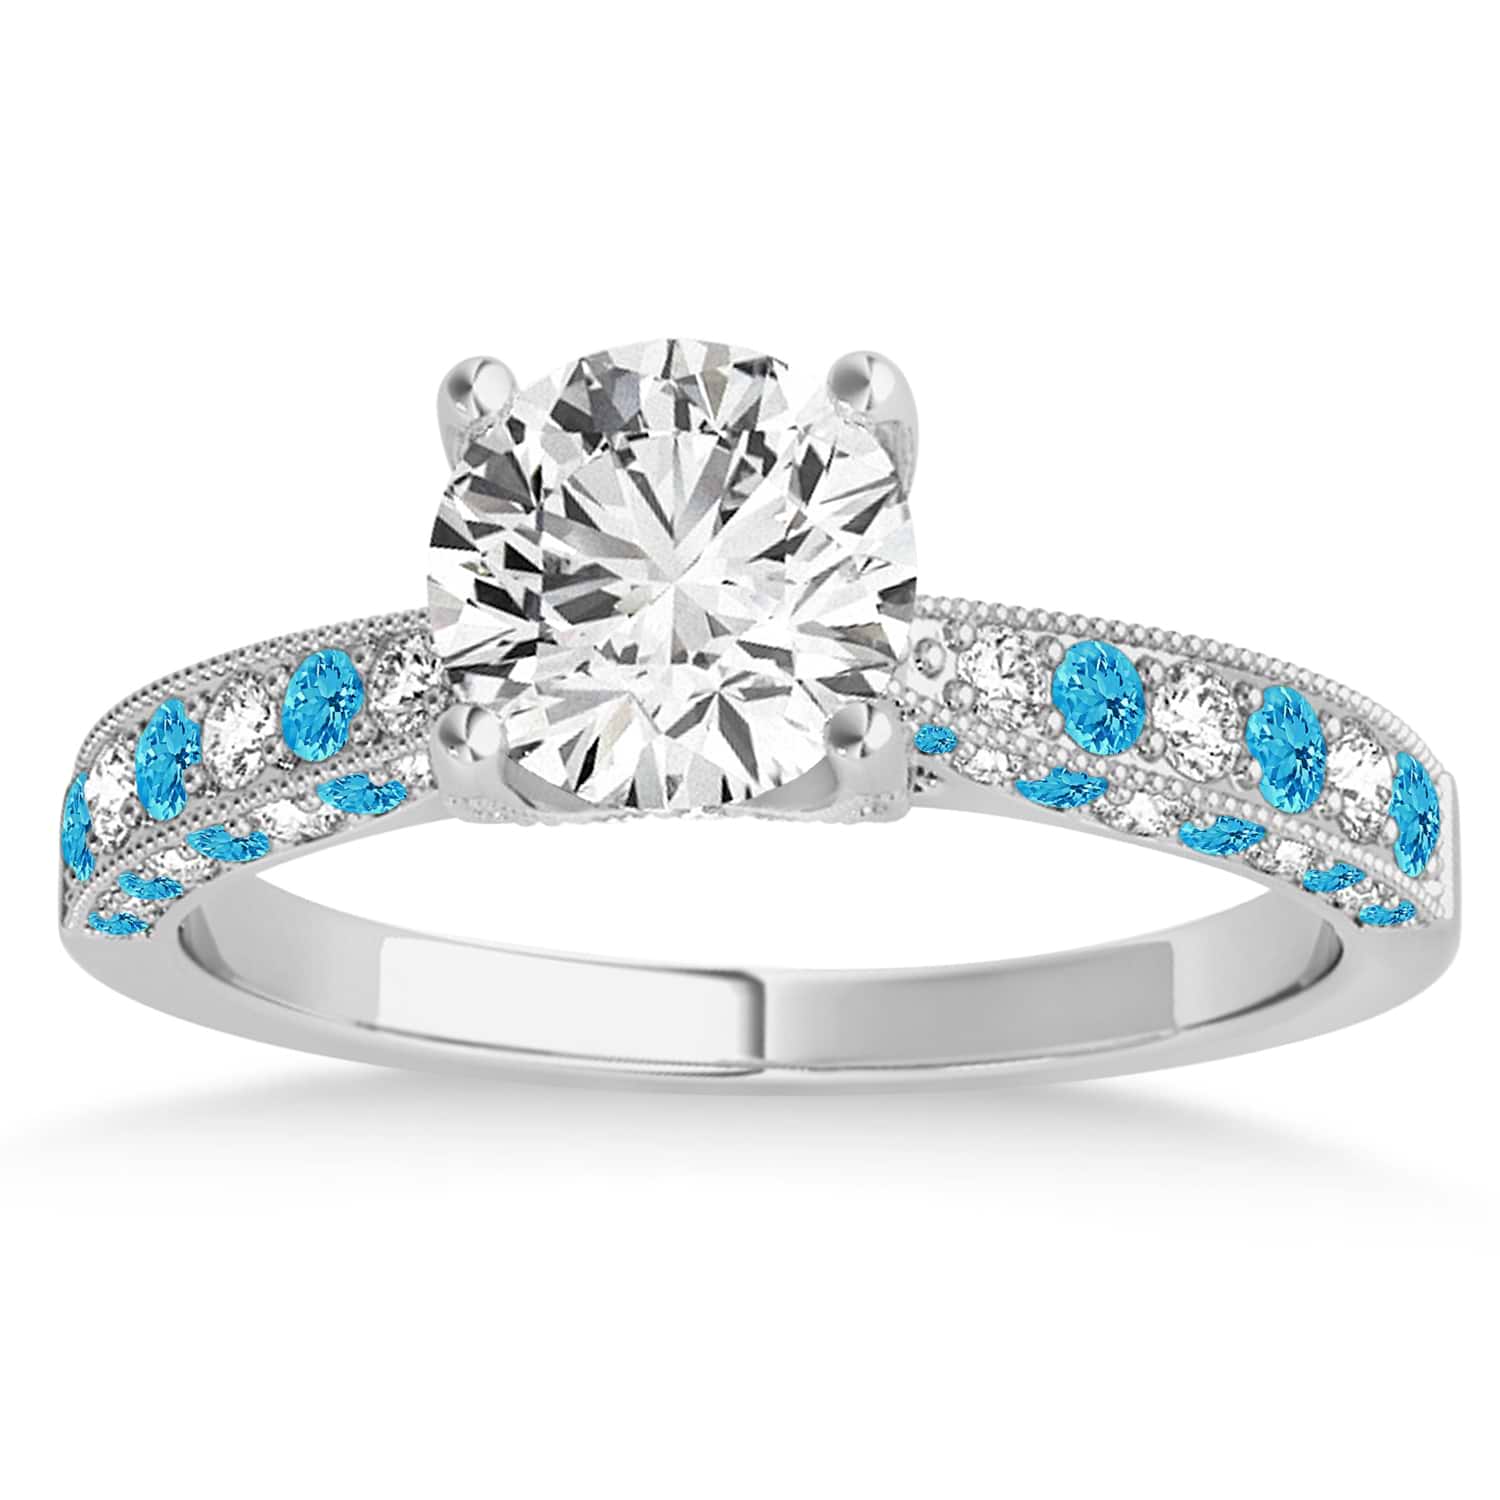 Alternating Diamond & Blue Topaz Engravable Engagement Ring in 14k White Gold (0.45ct)